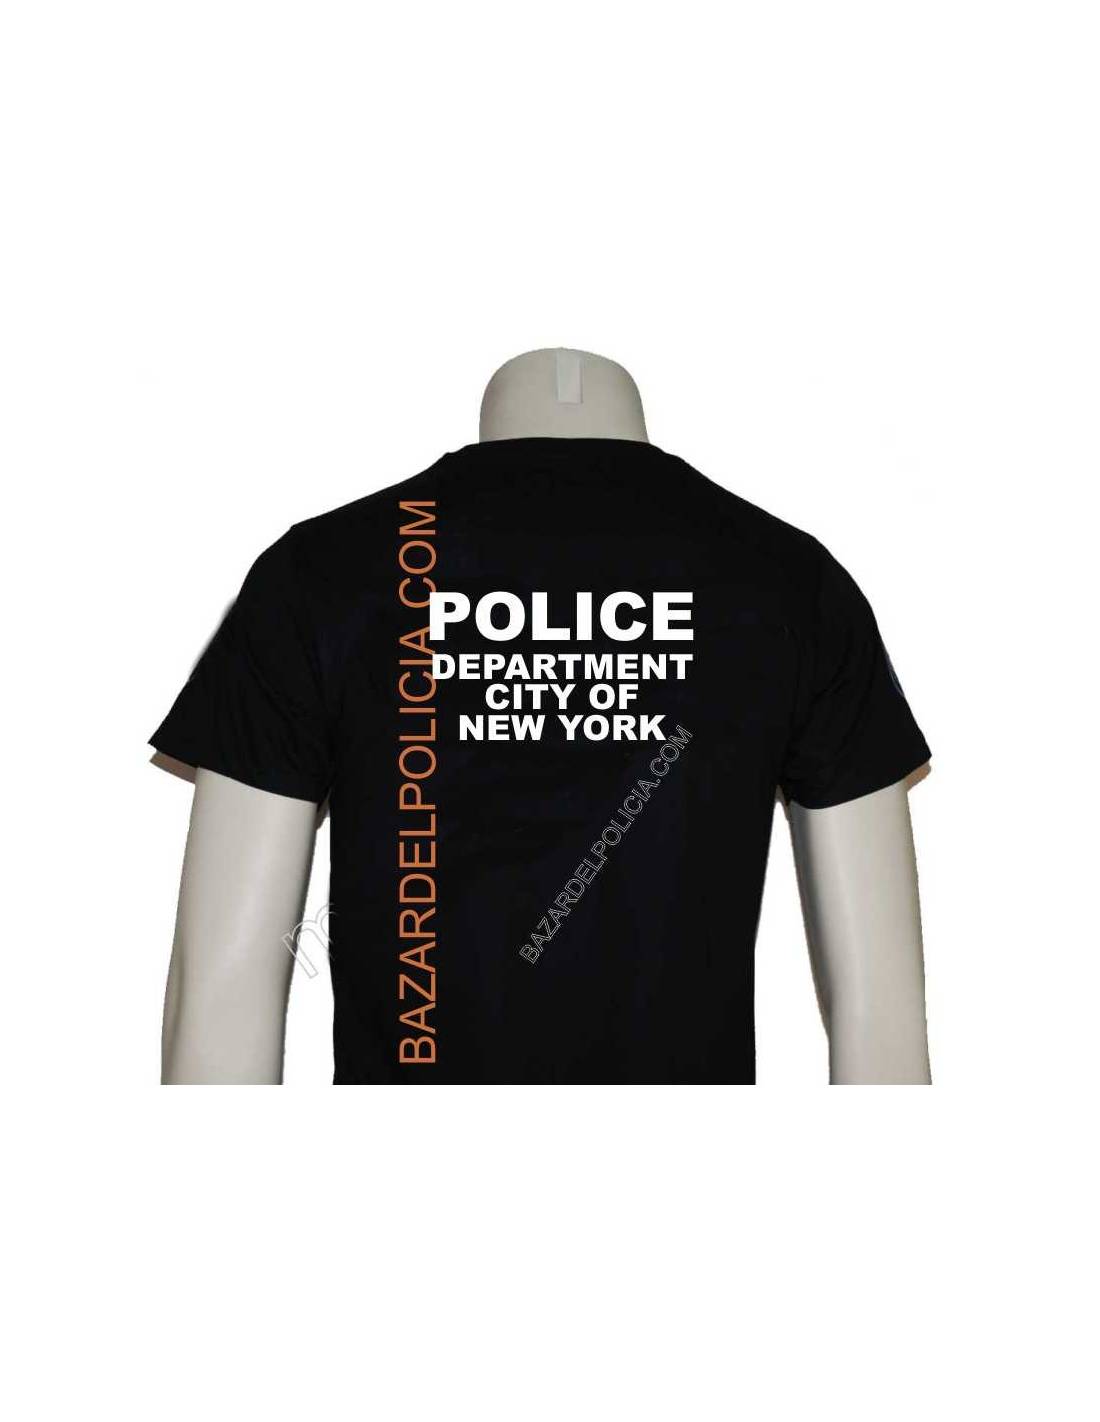 Oeste Principiante pasta POLO POLICE DEPARTMENT NEW YORK